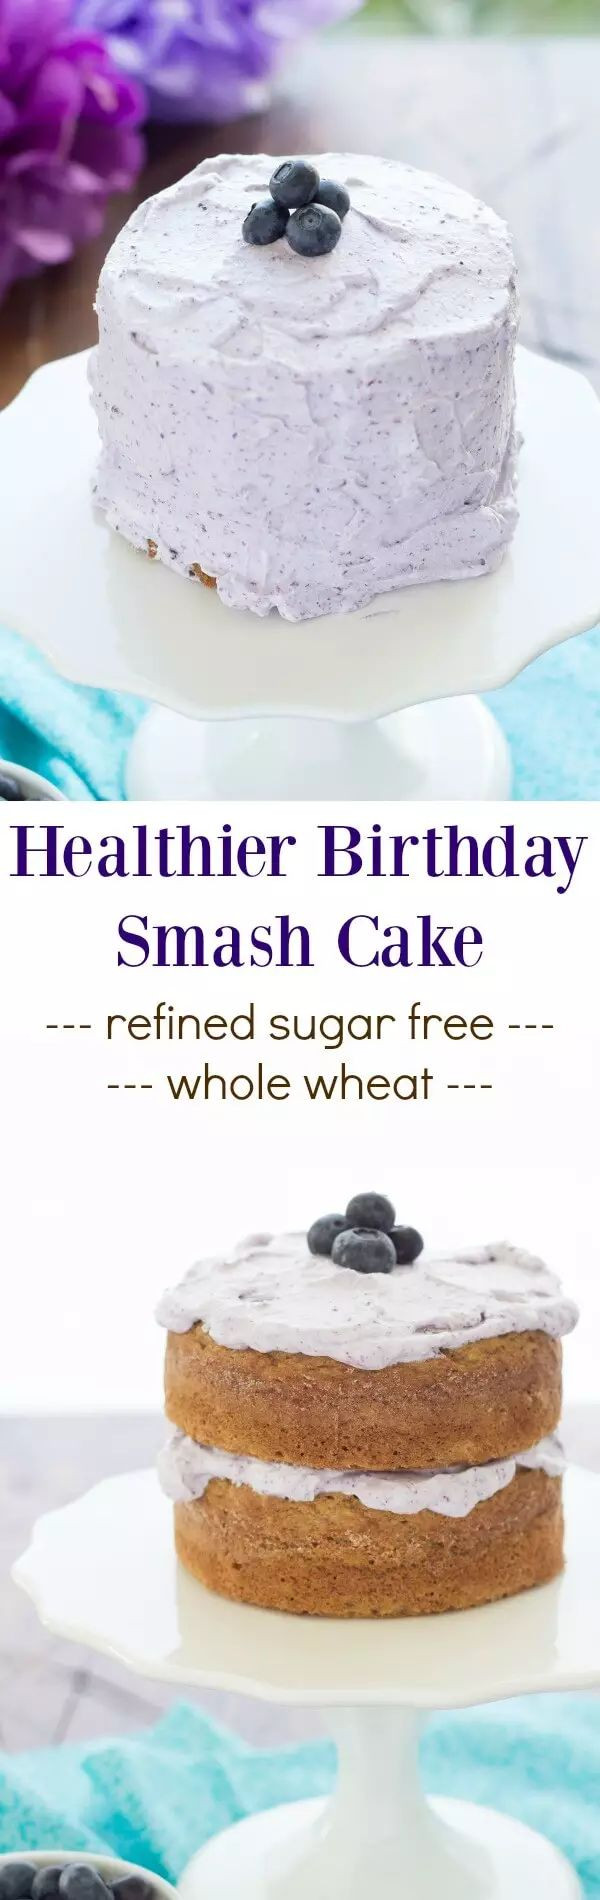 Healthy Smash Cake Recipes
 100 Smash Cake Recipes on Pinterest